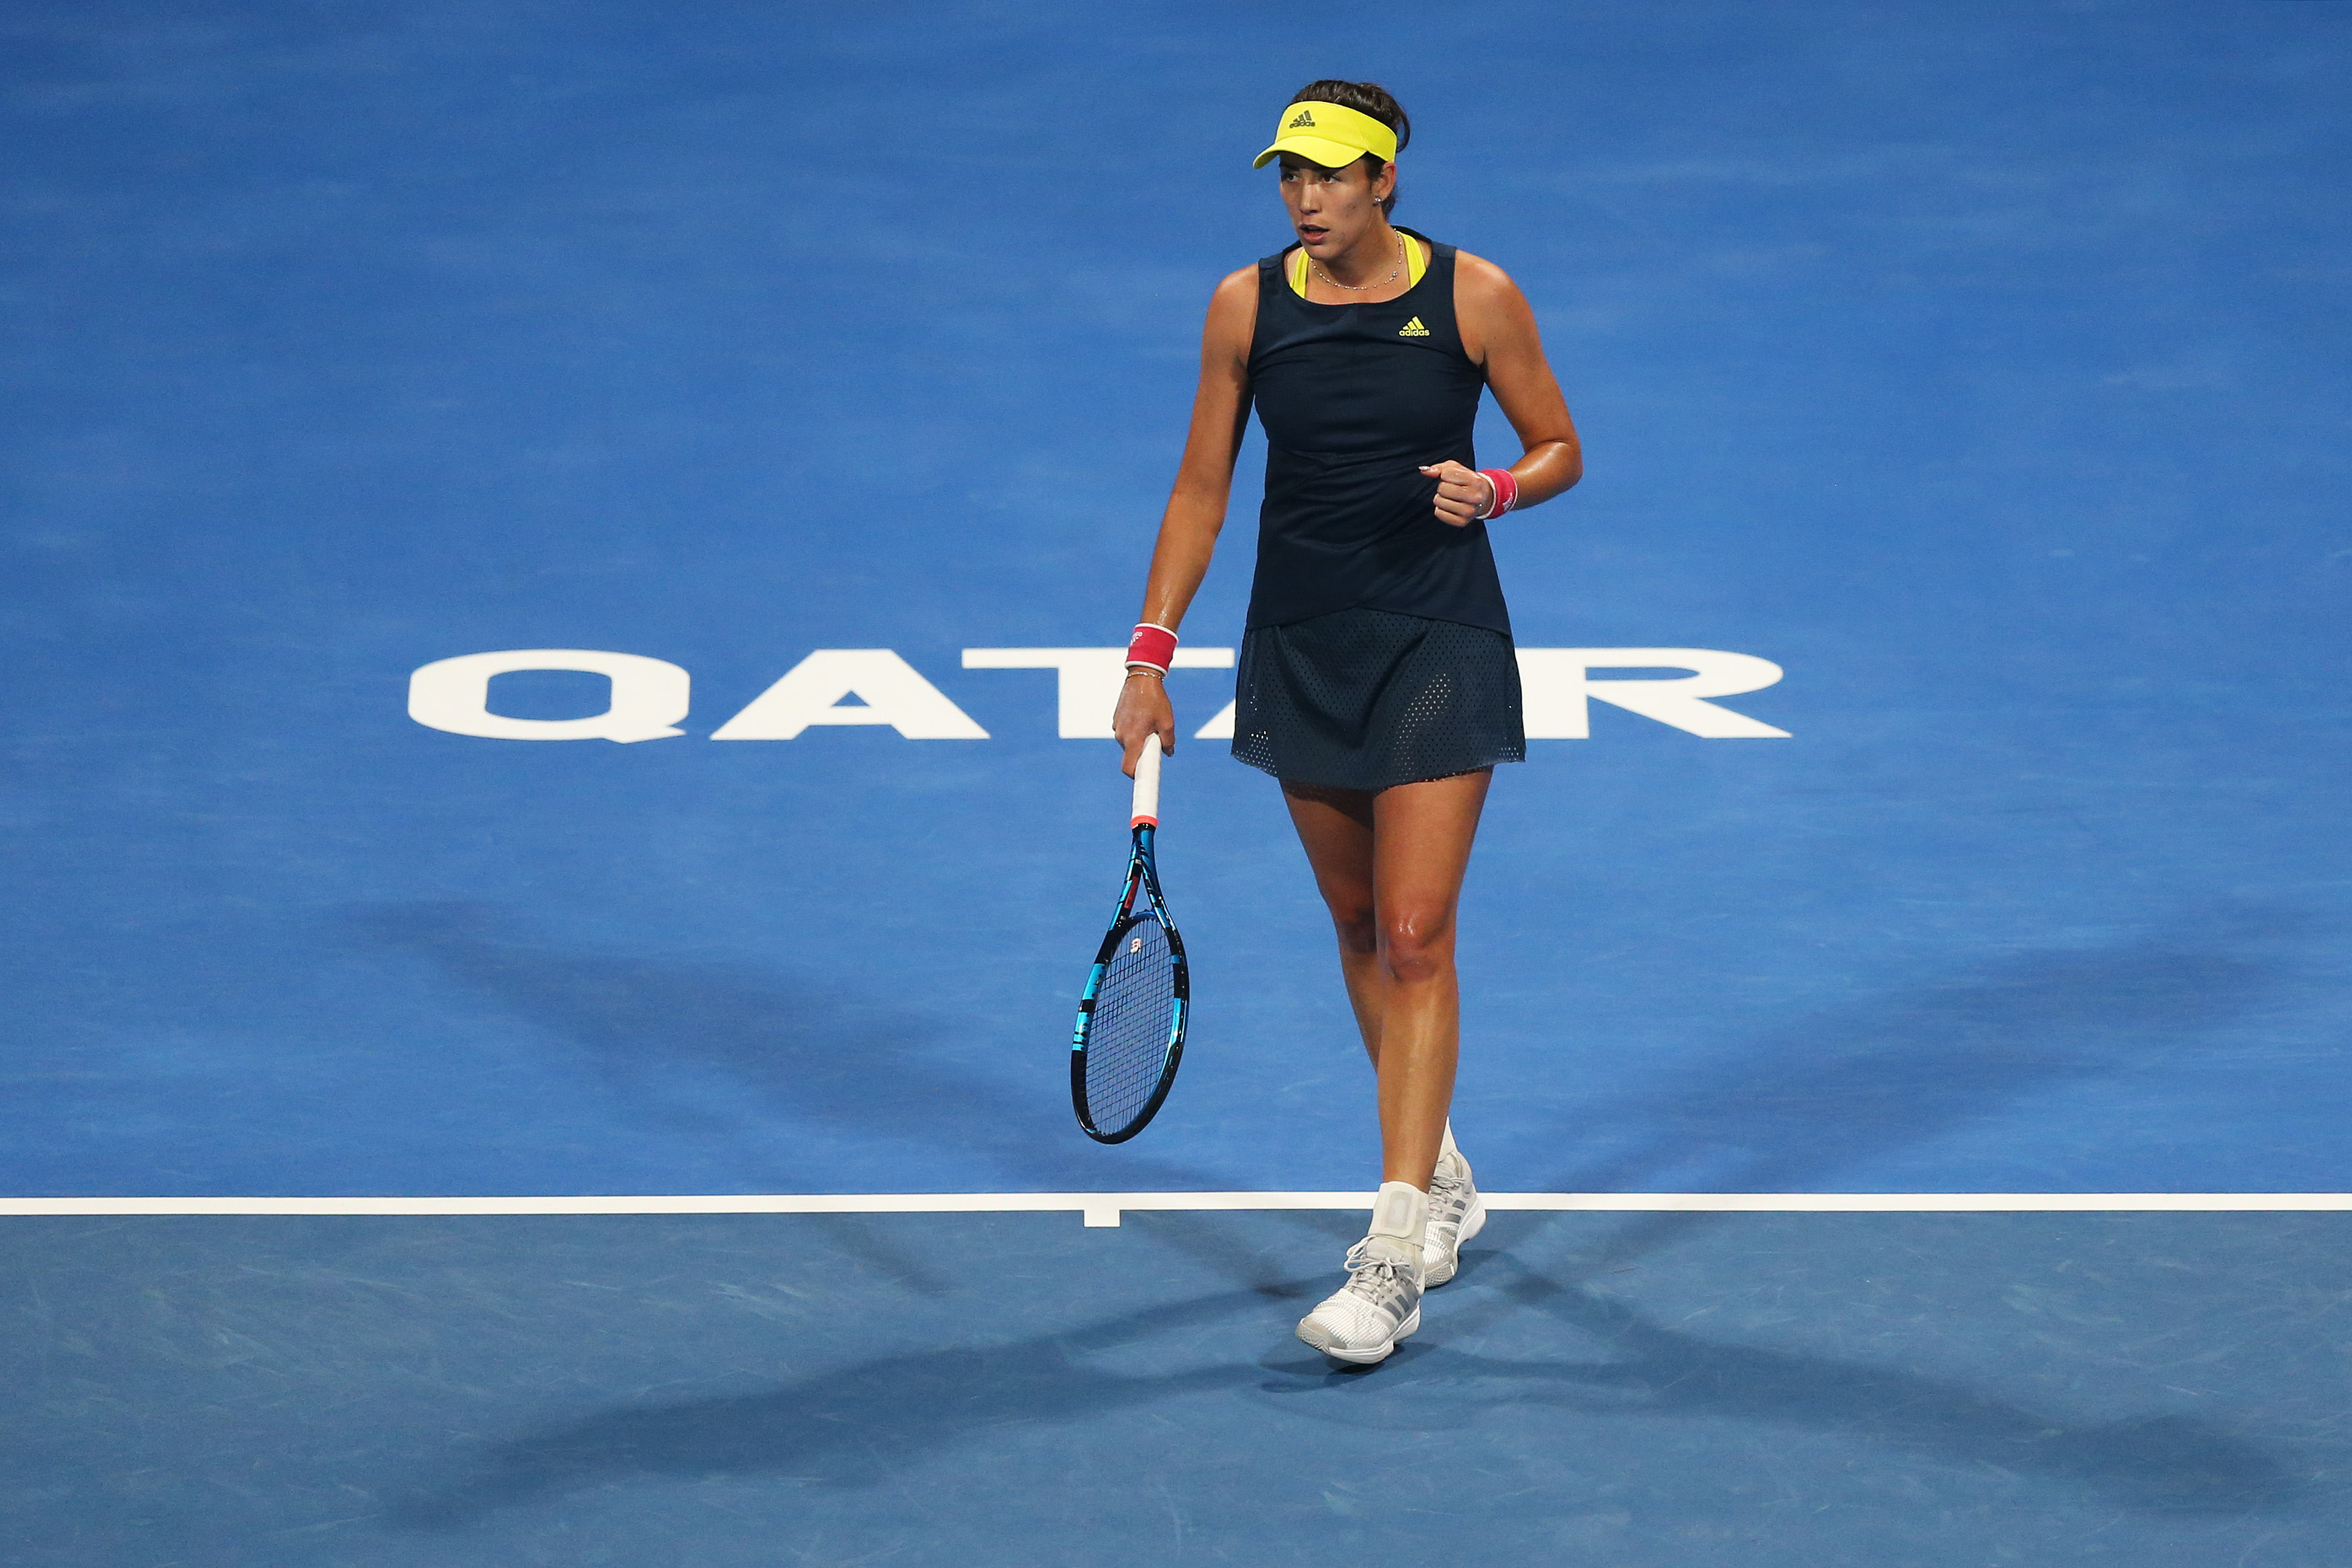 Dubai Open: Coco Gauff wins another three-setter; Maria Sakkari upset